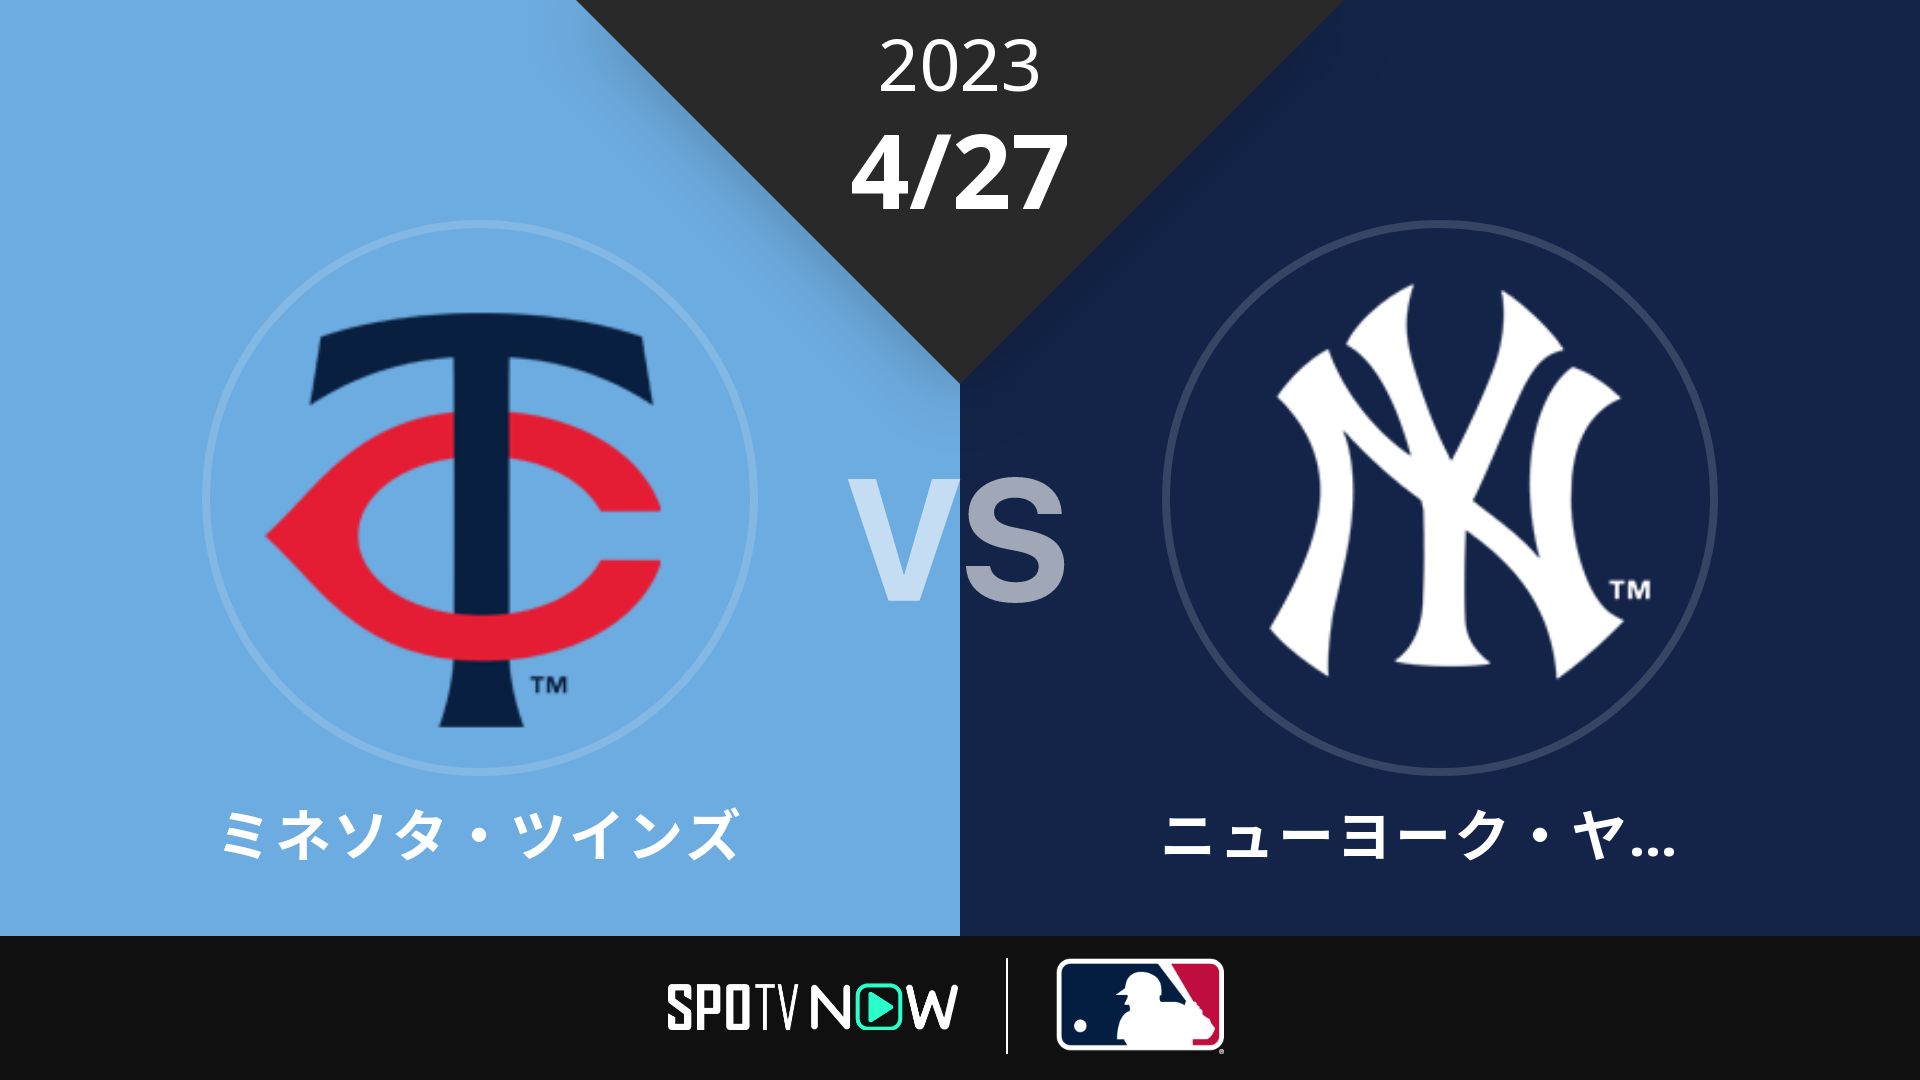 2023/4/27 ツインズ vs ヤンキース [MLB]